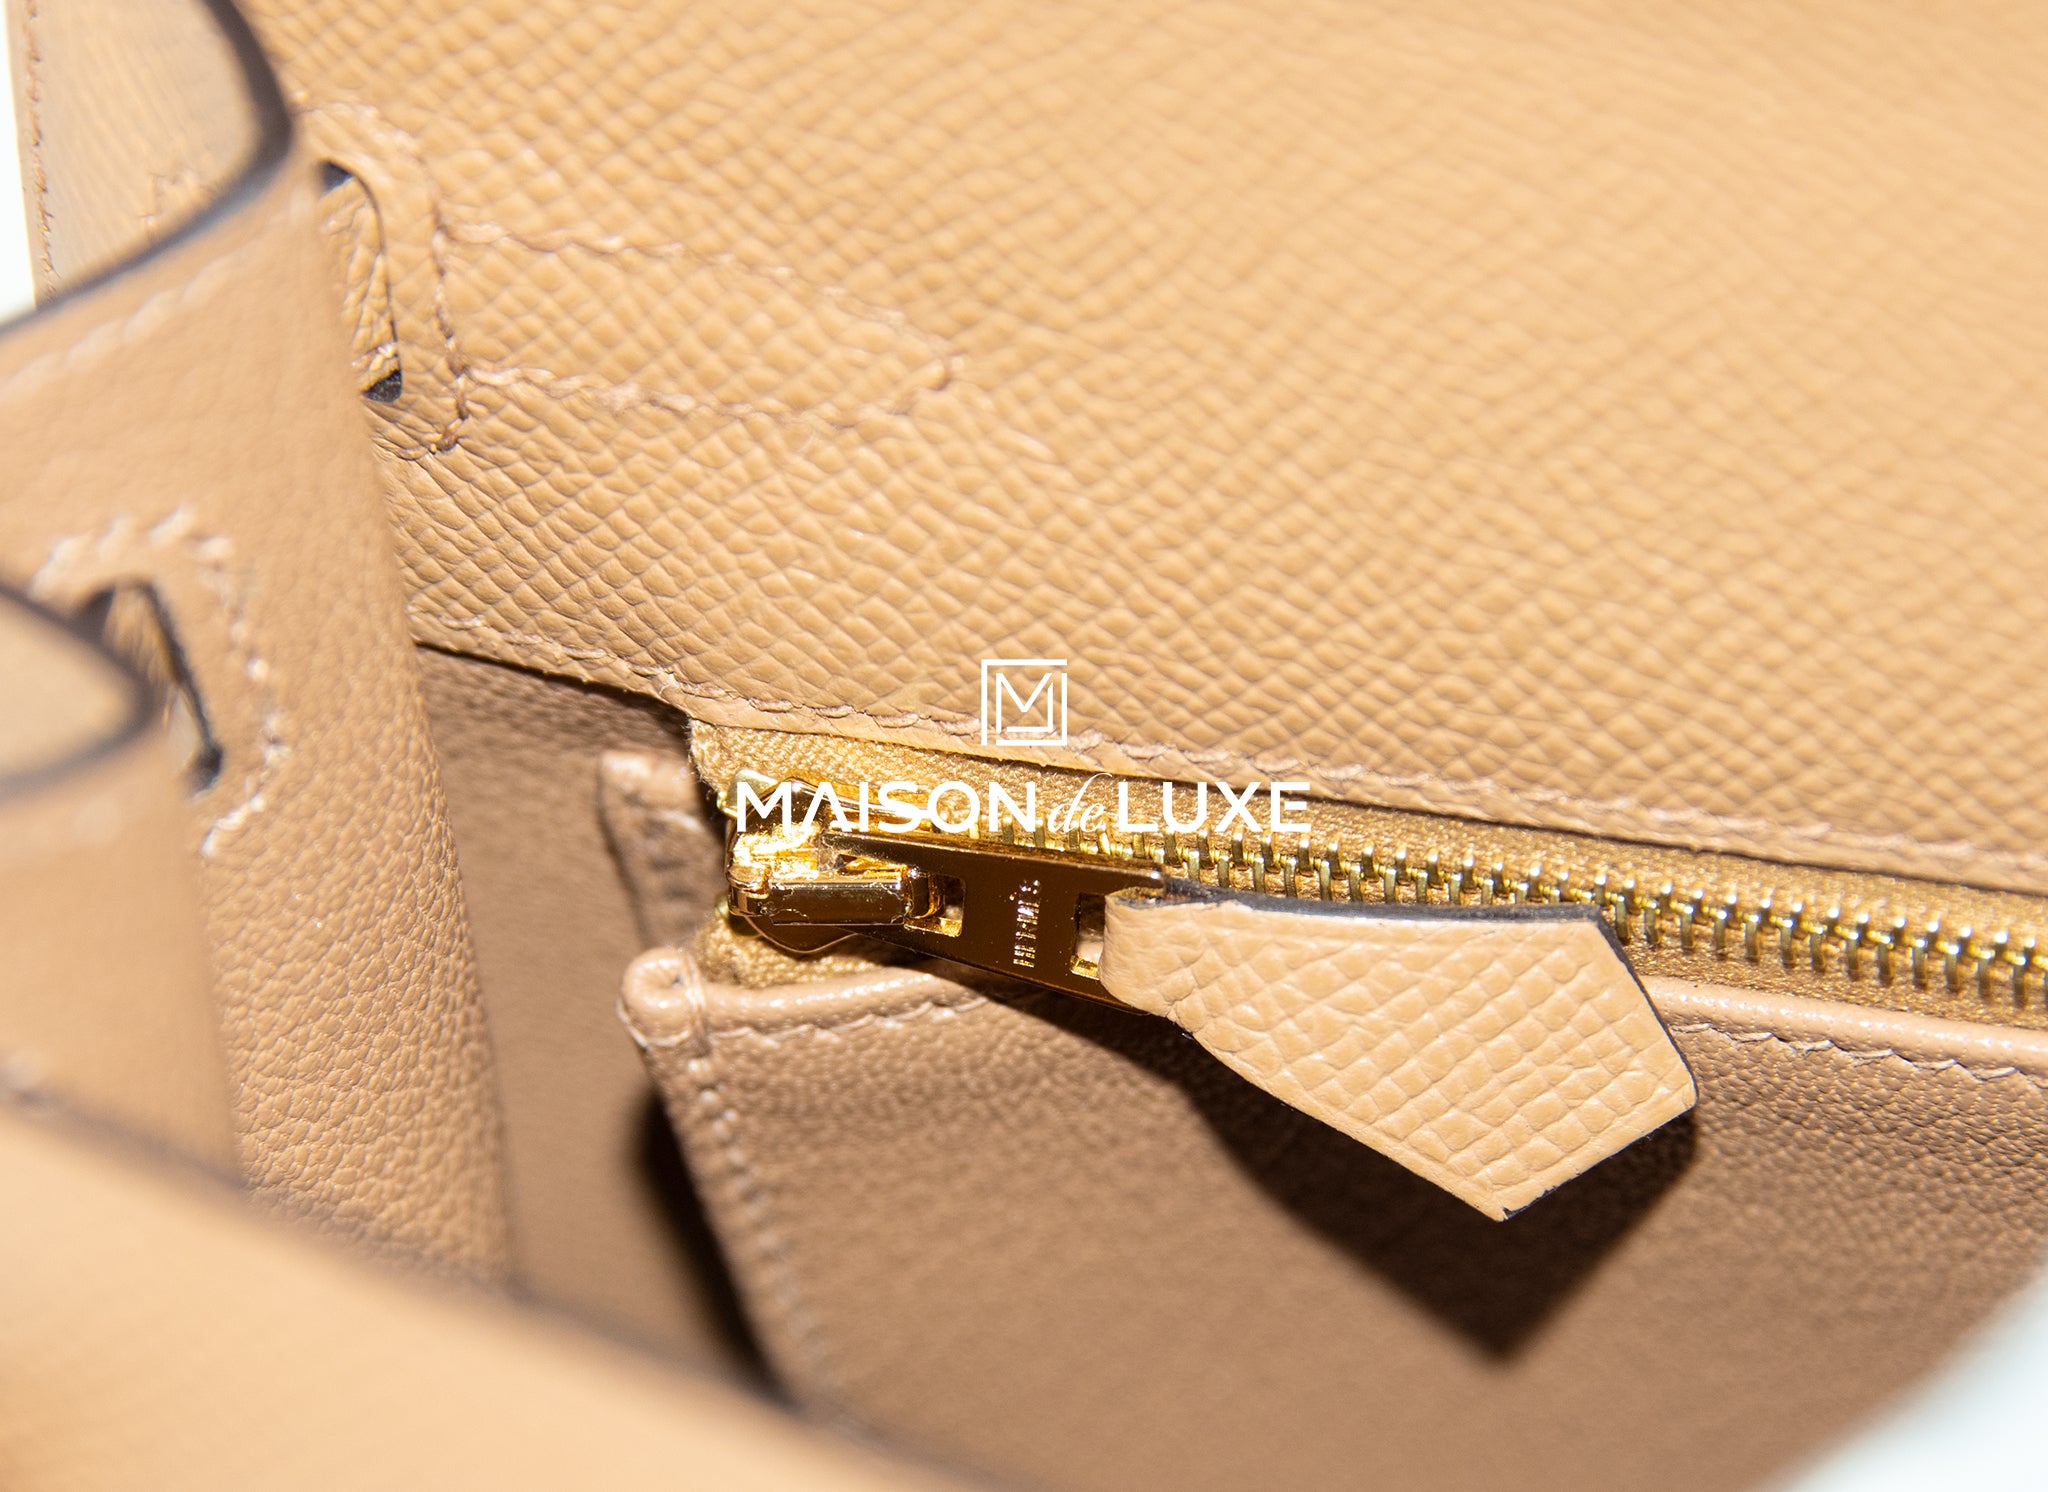 Hermès 2023 Epsom Kelly II Sellier 25 w/ Tags - Grey Handle Bags, Handbags  - HER558269